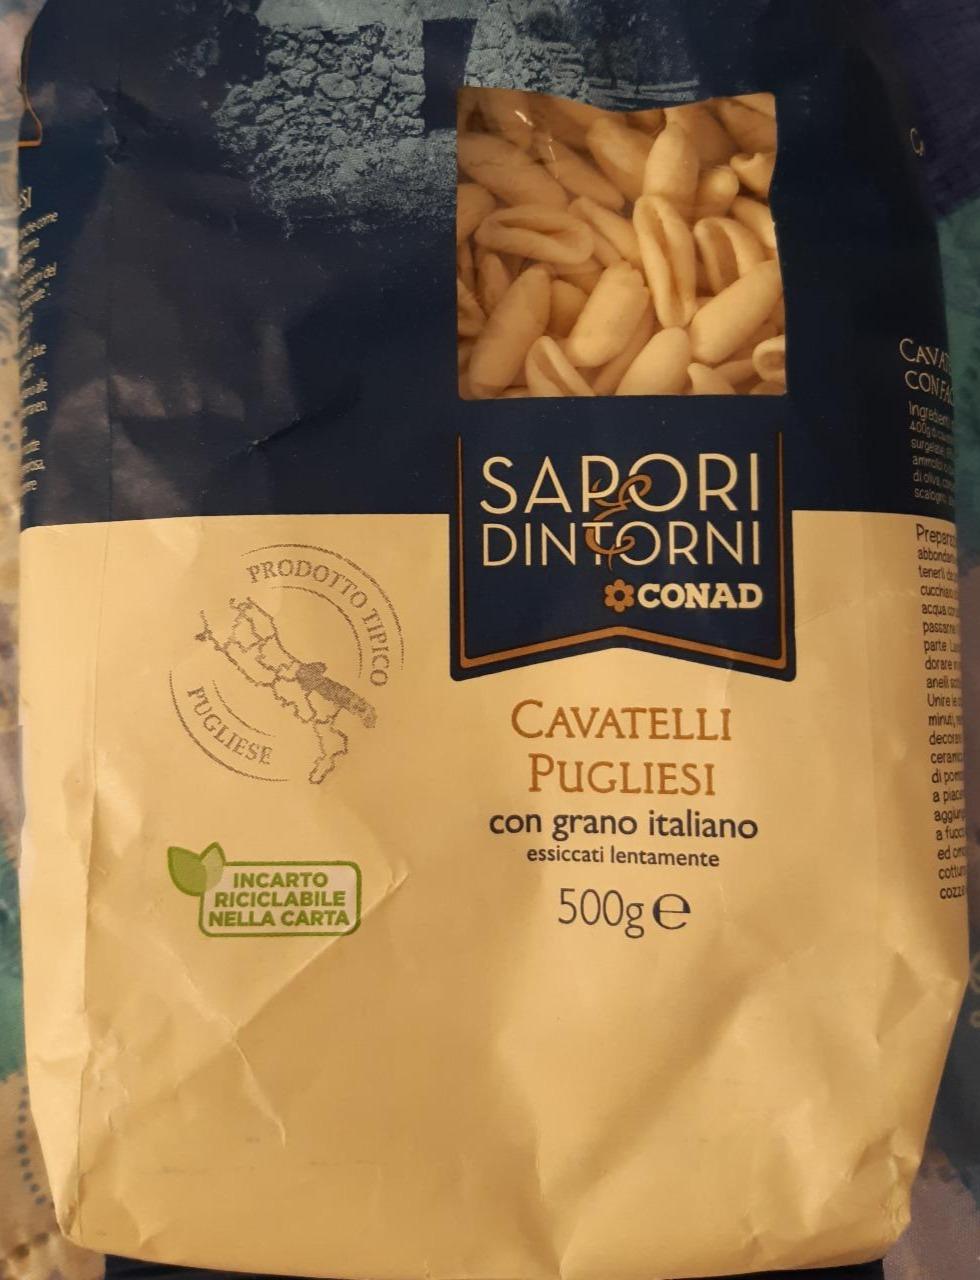 Fotografie - Cavatelli Pugliesi con grano italiano Sapori e Dintorni